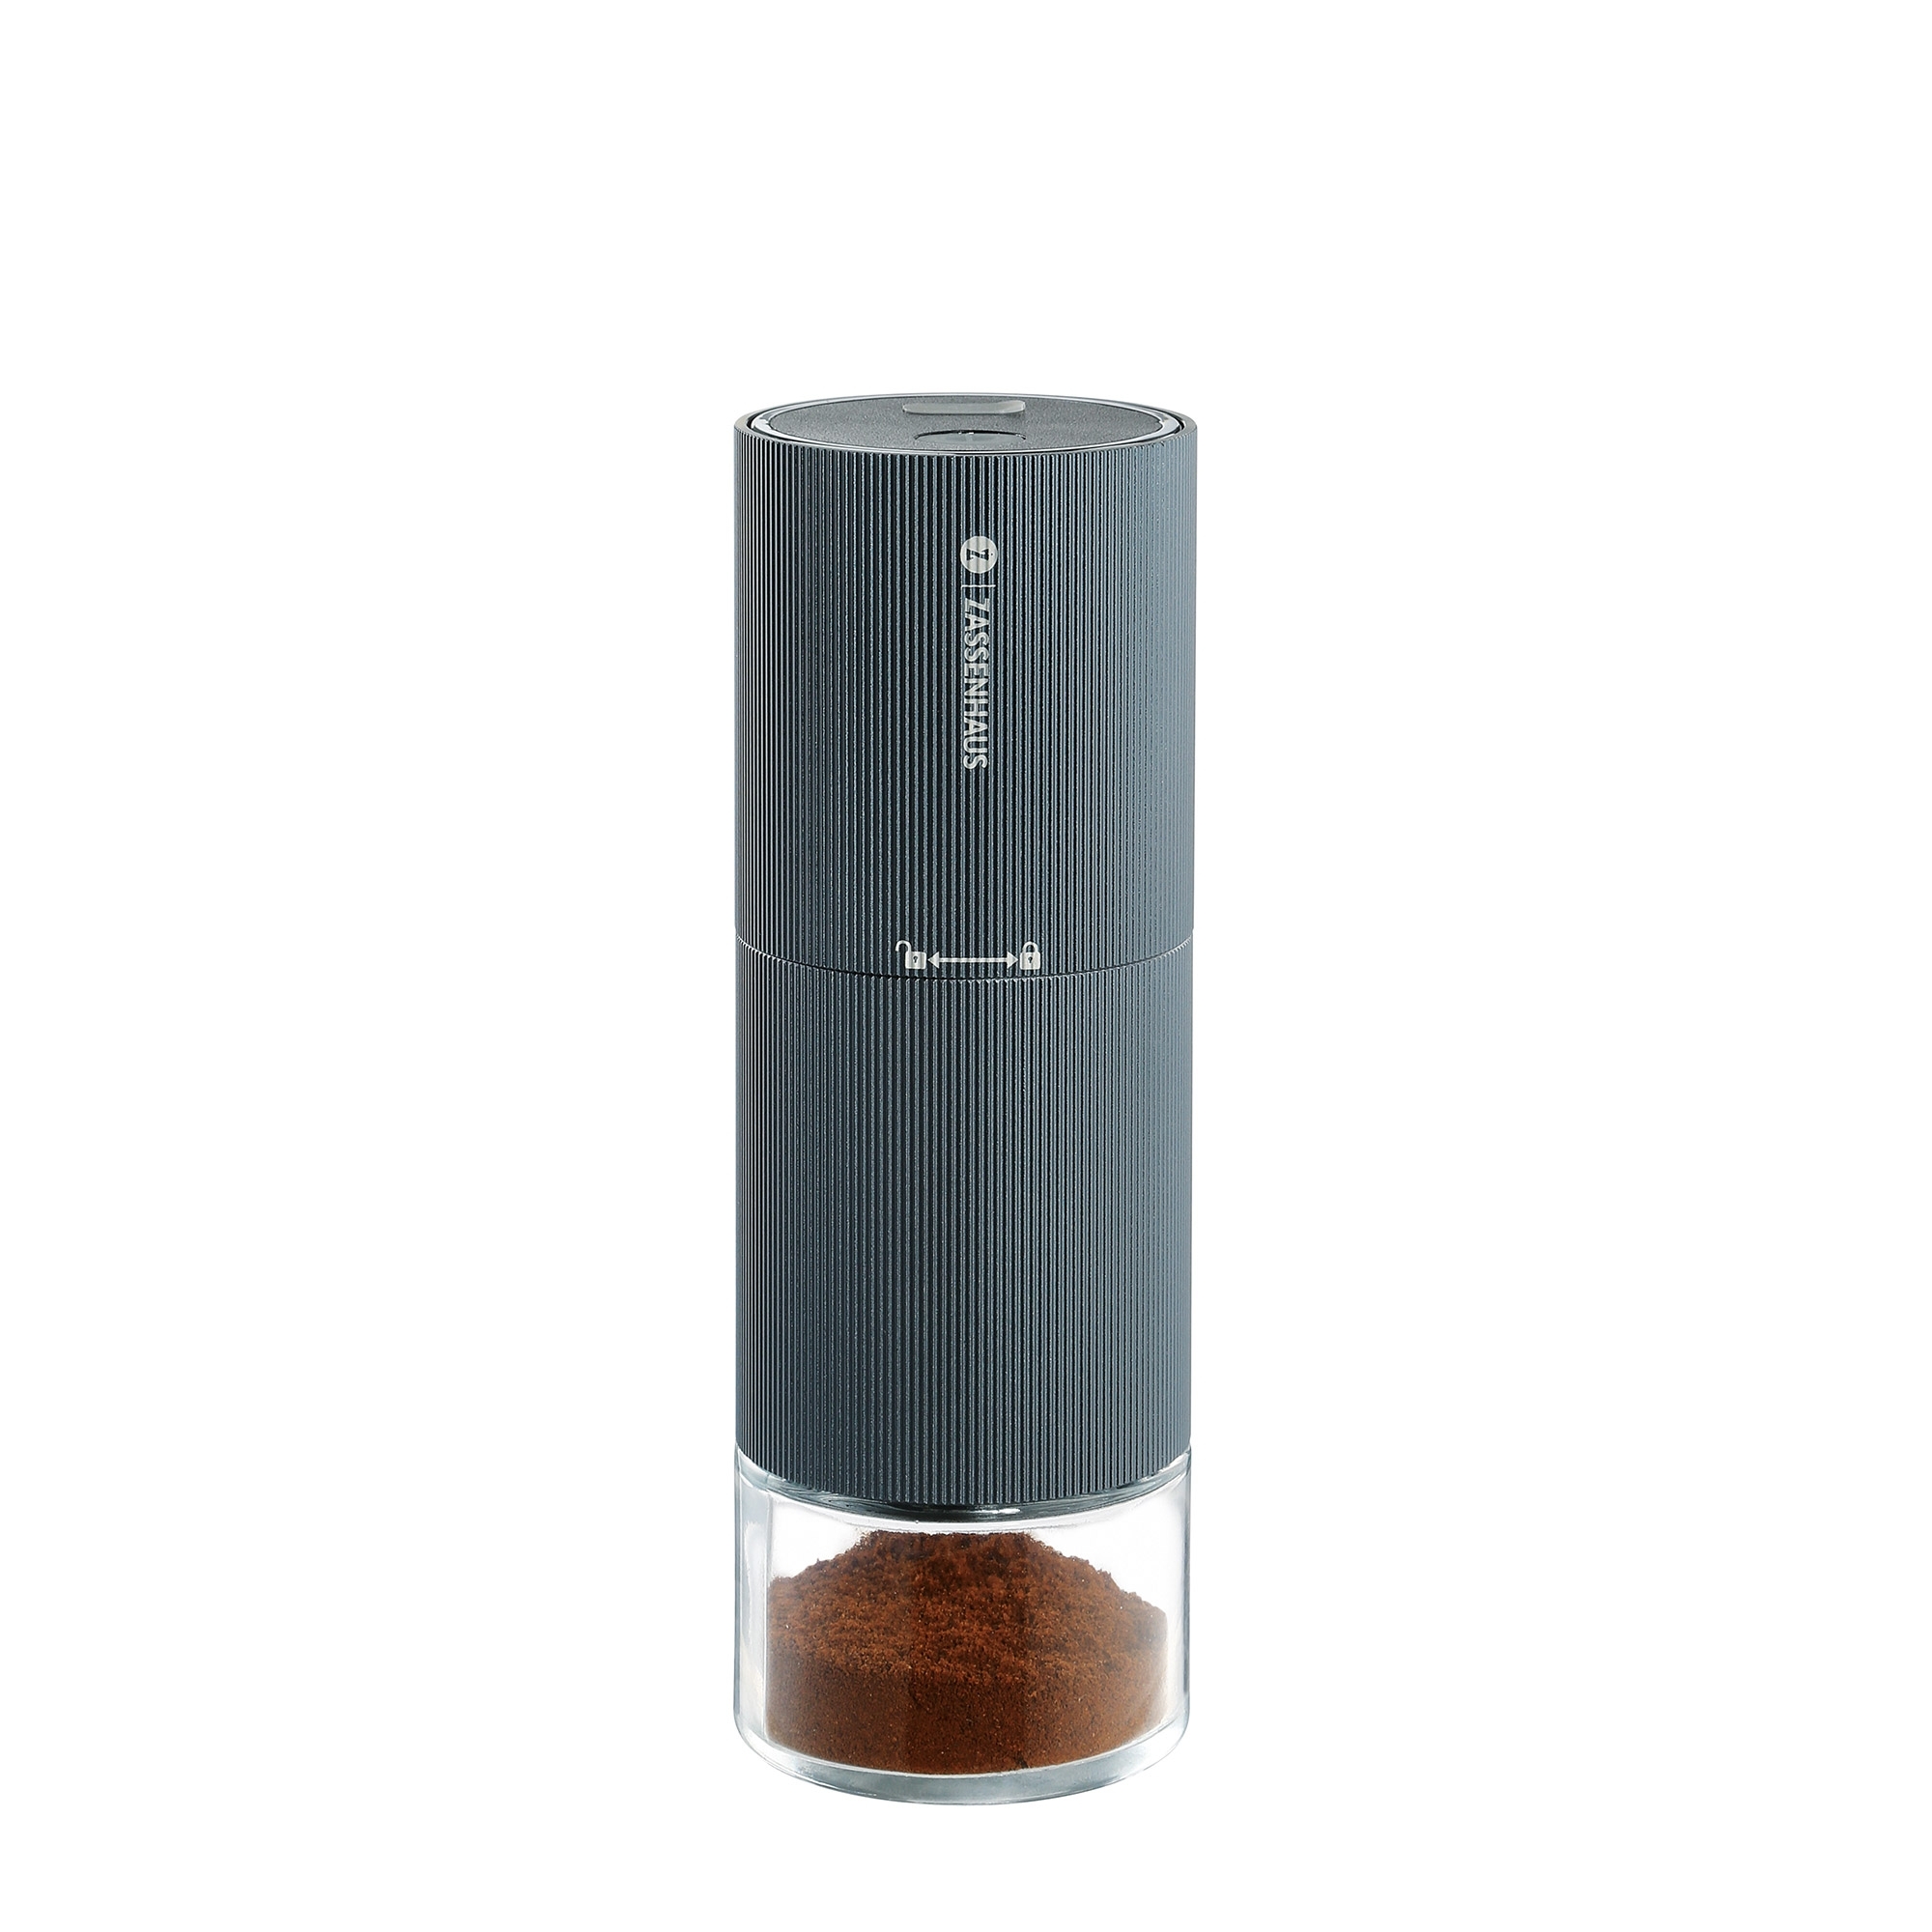 Zassenhaus - MASTER USB coffee grinder/espresso grinder